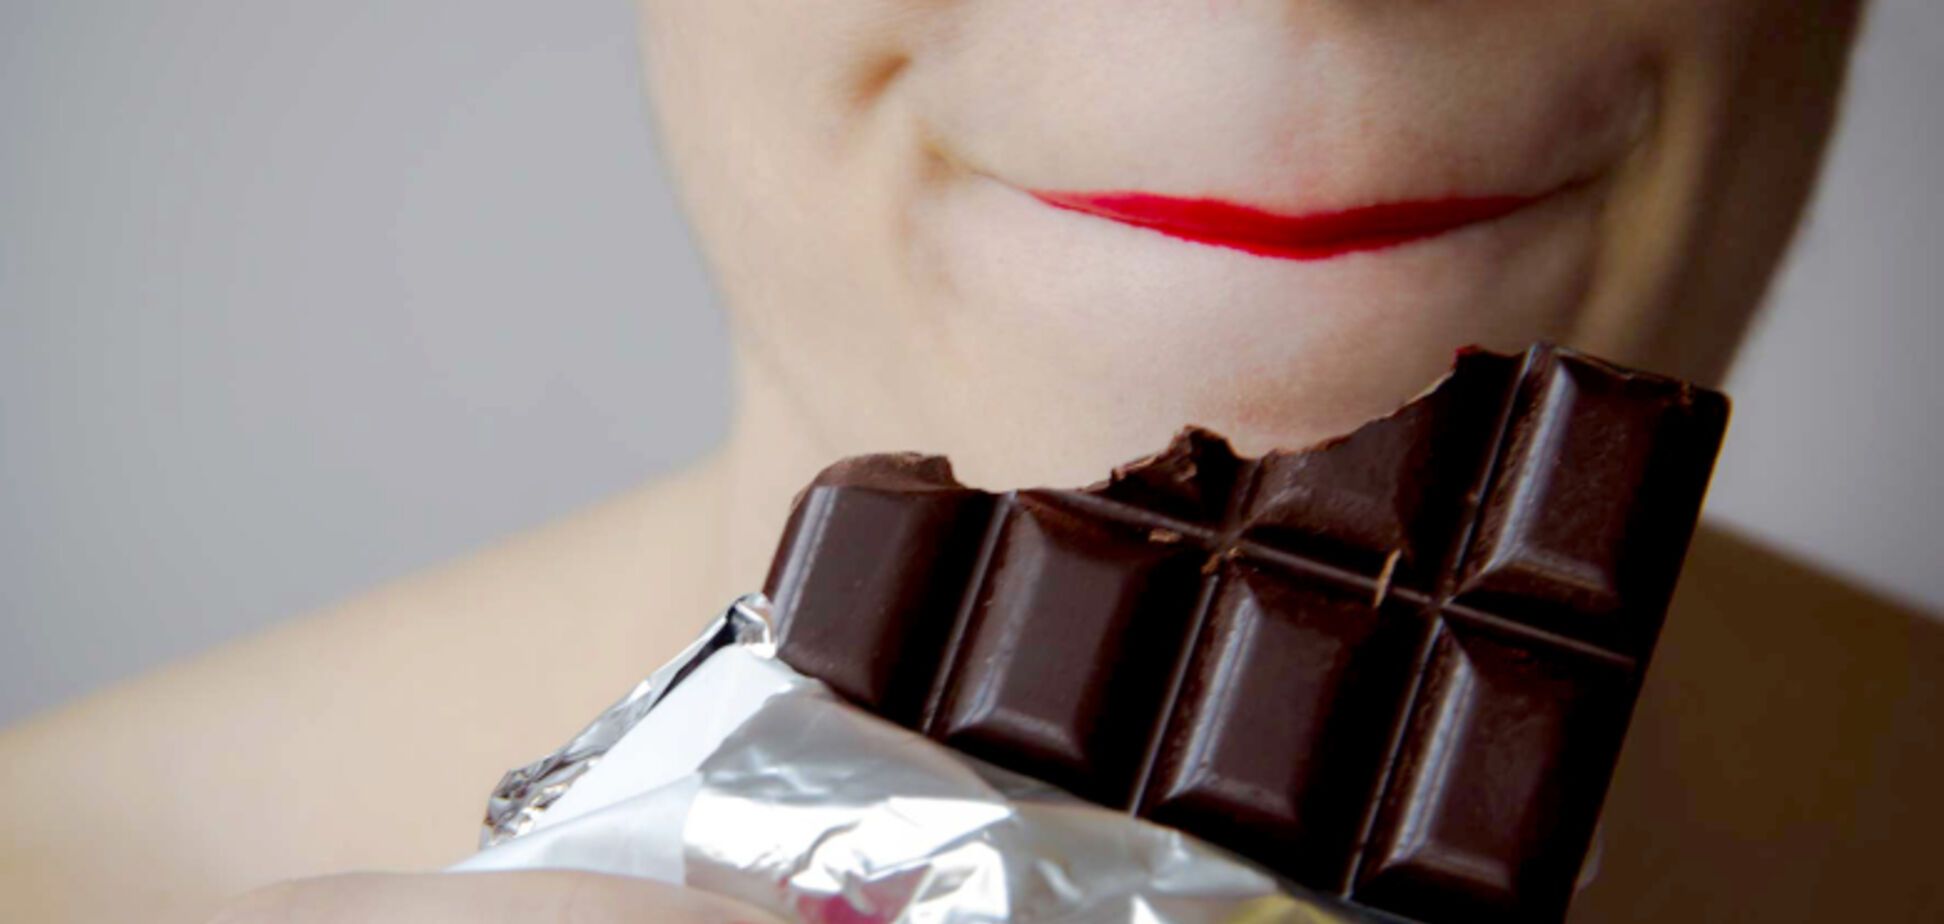 Горький шоколад полезен? Диетолог развенчала популярный миф